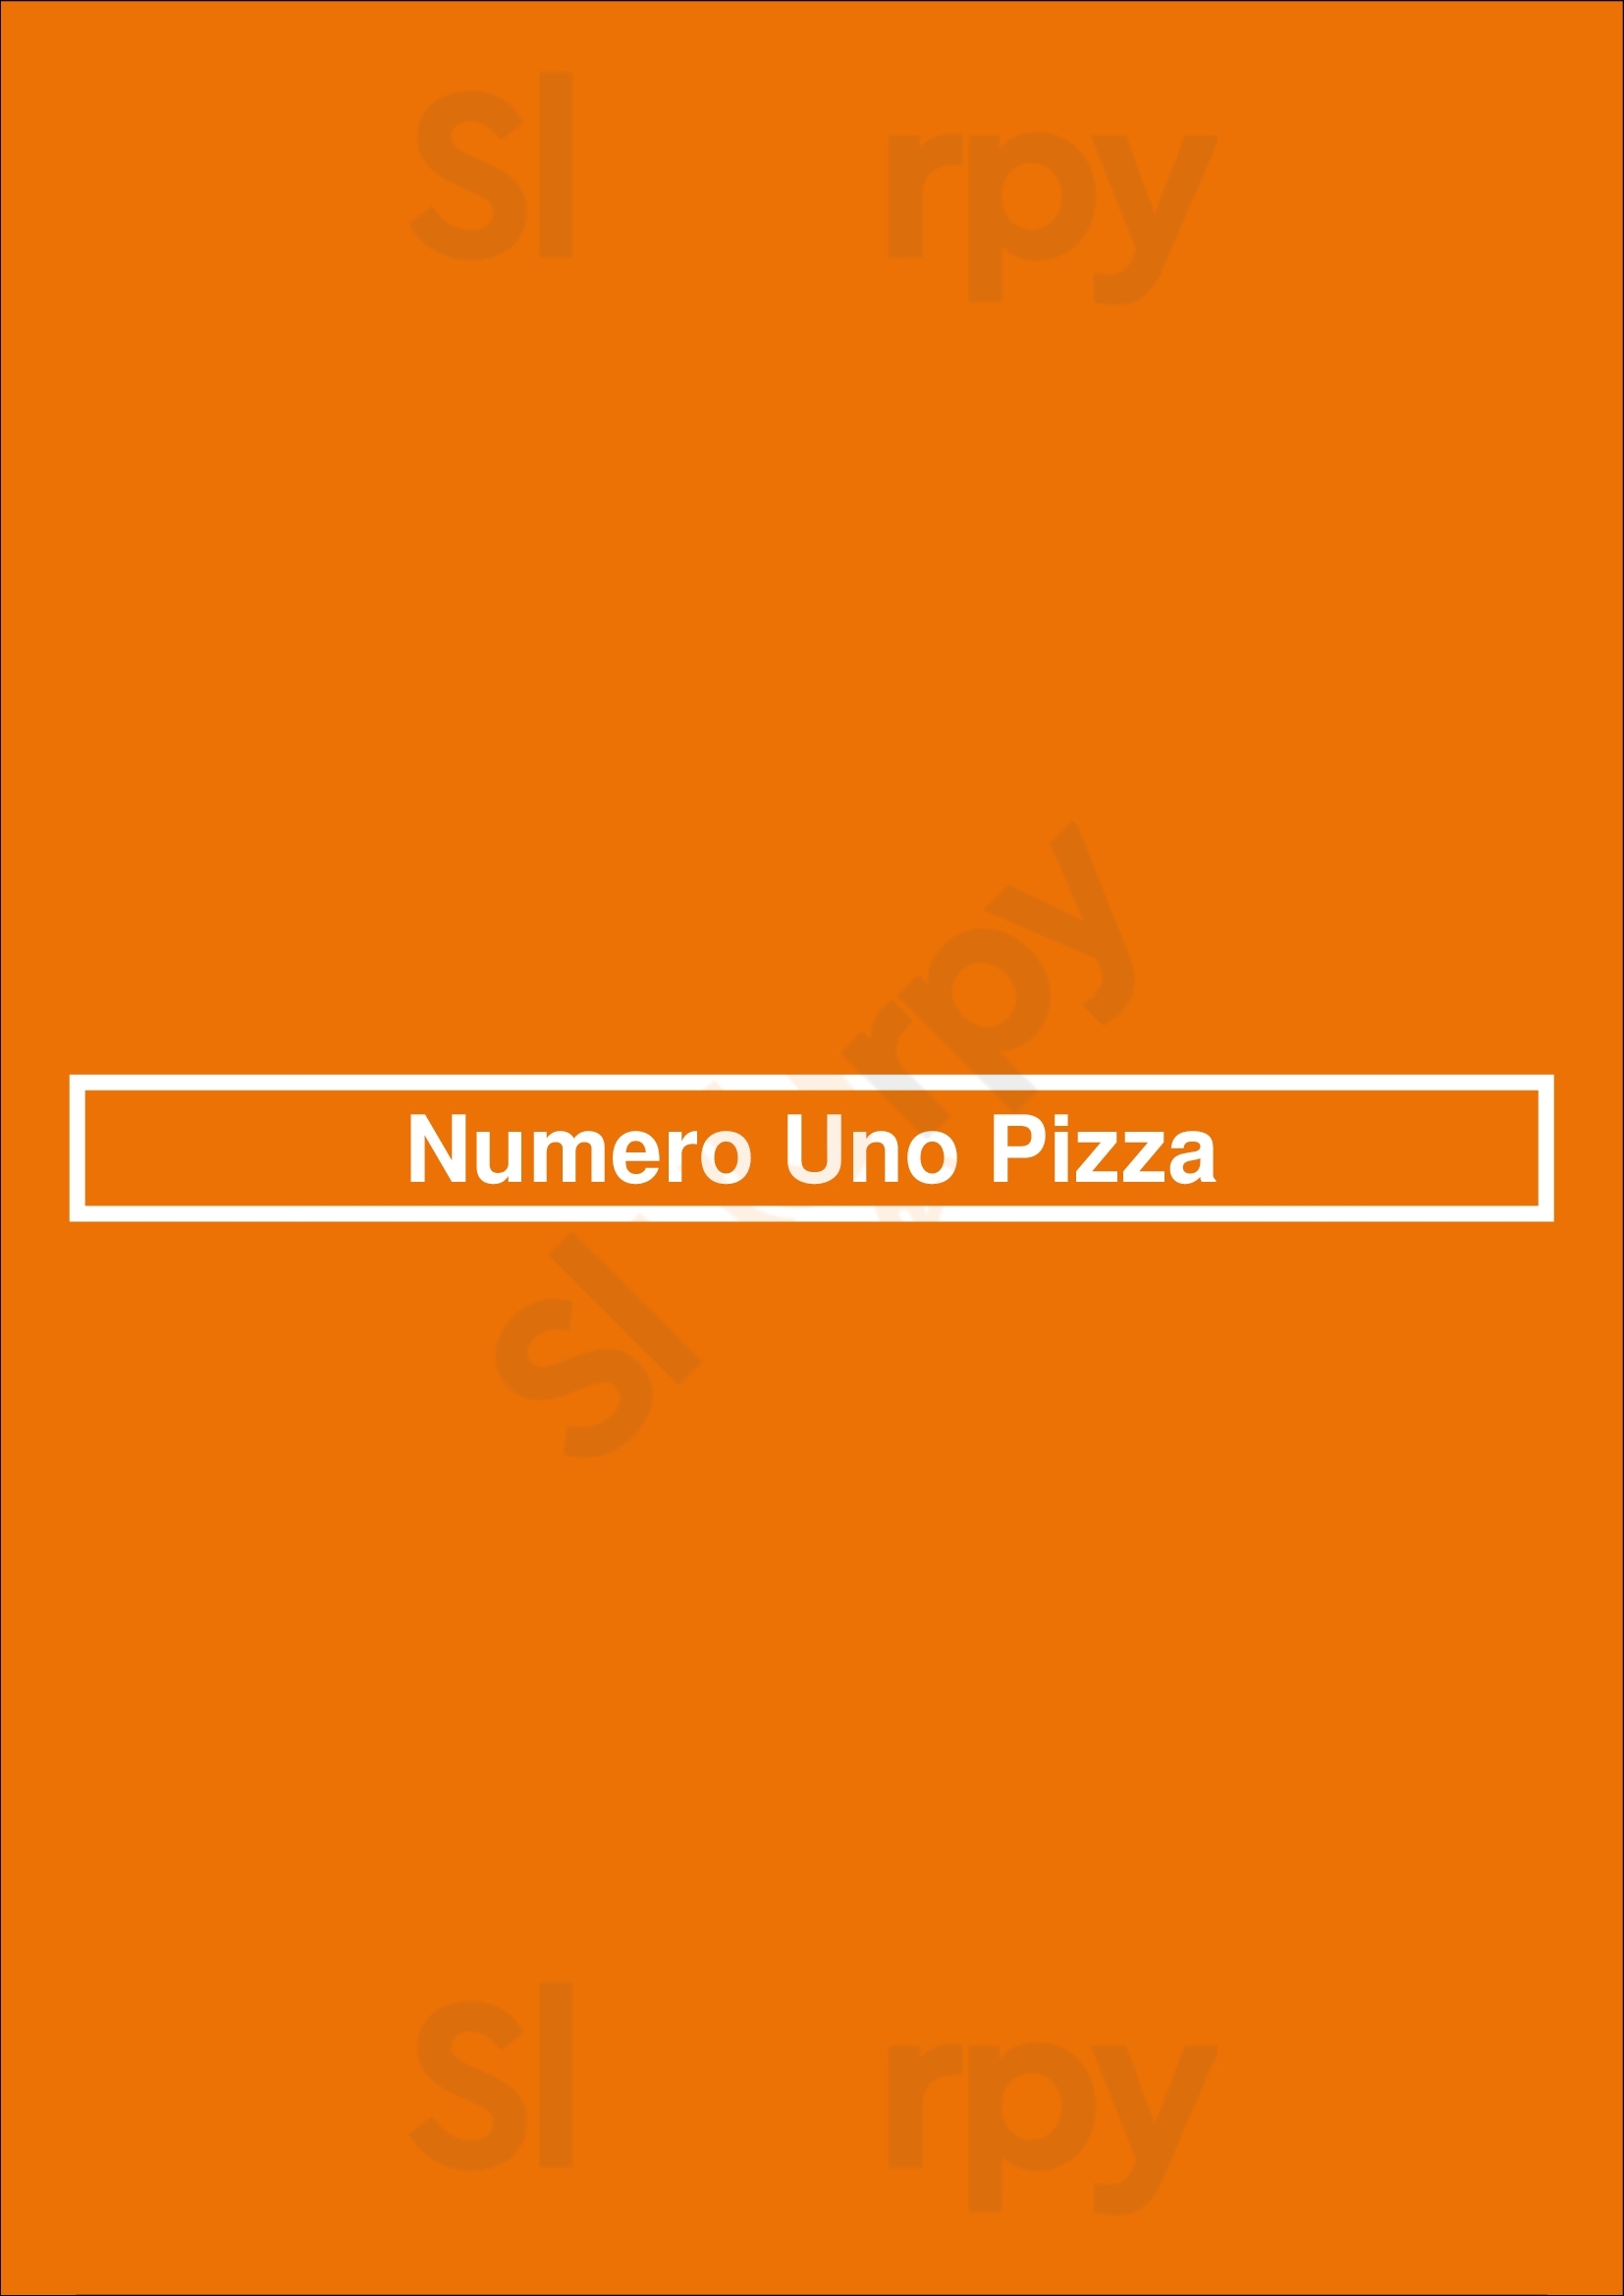 Numero Uno Pizza Los Angeles Menu - 1